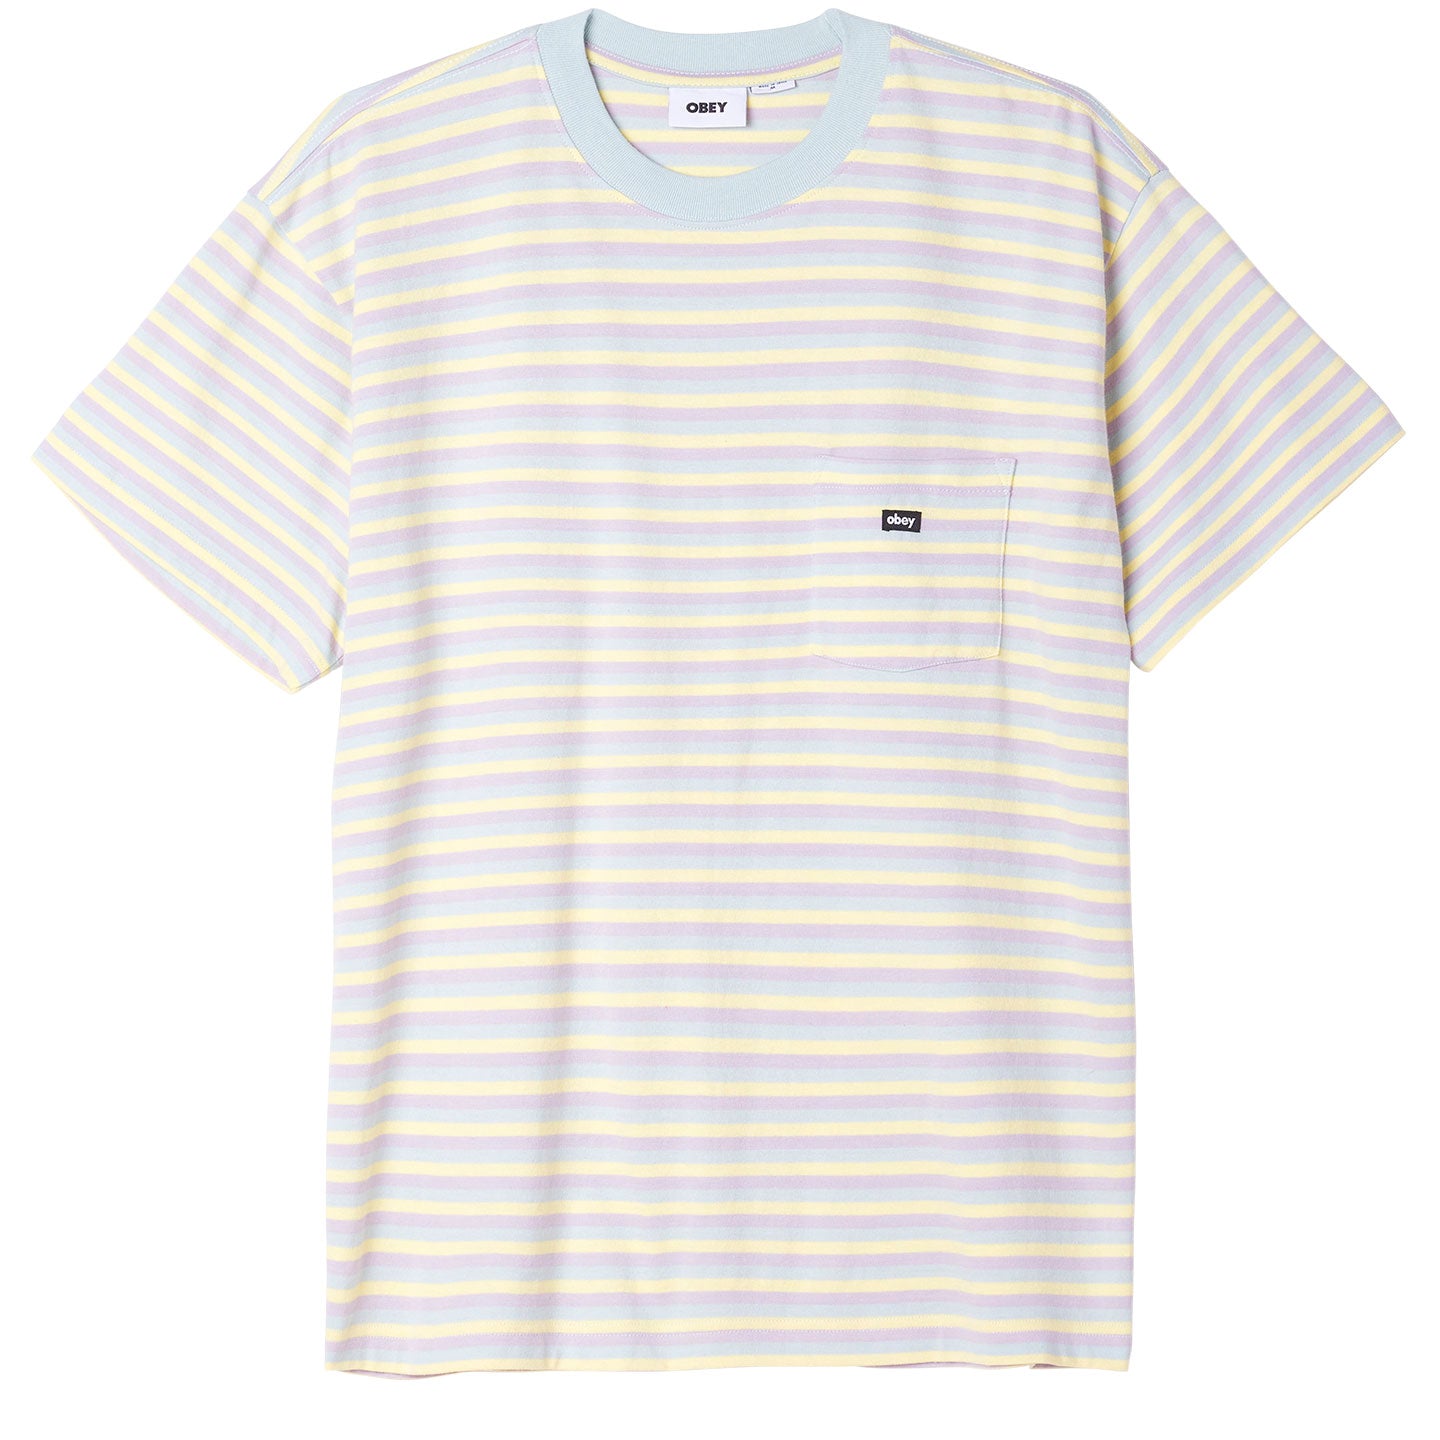 OBEY River Stripe Pocket T-Shirt